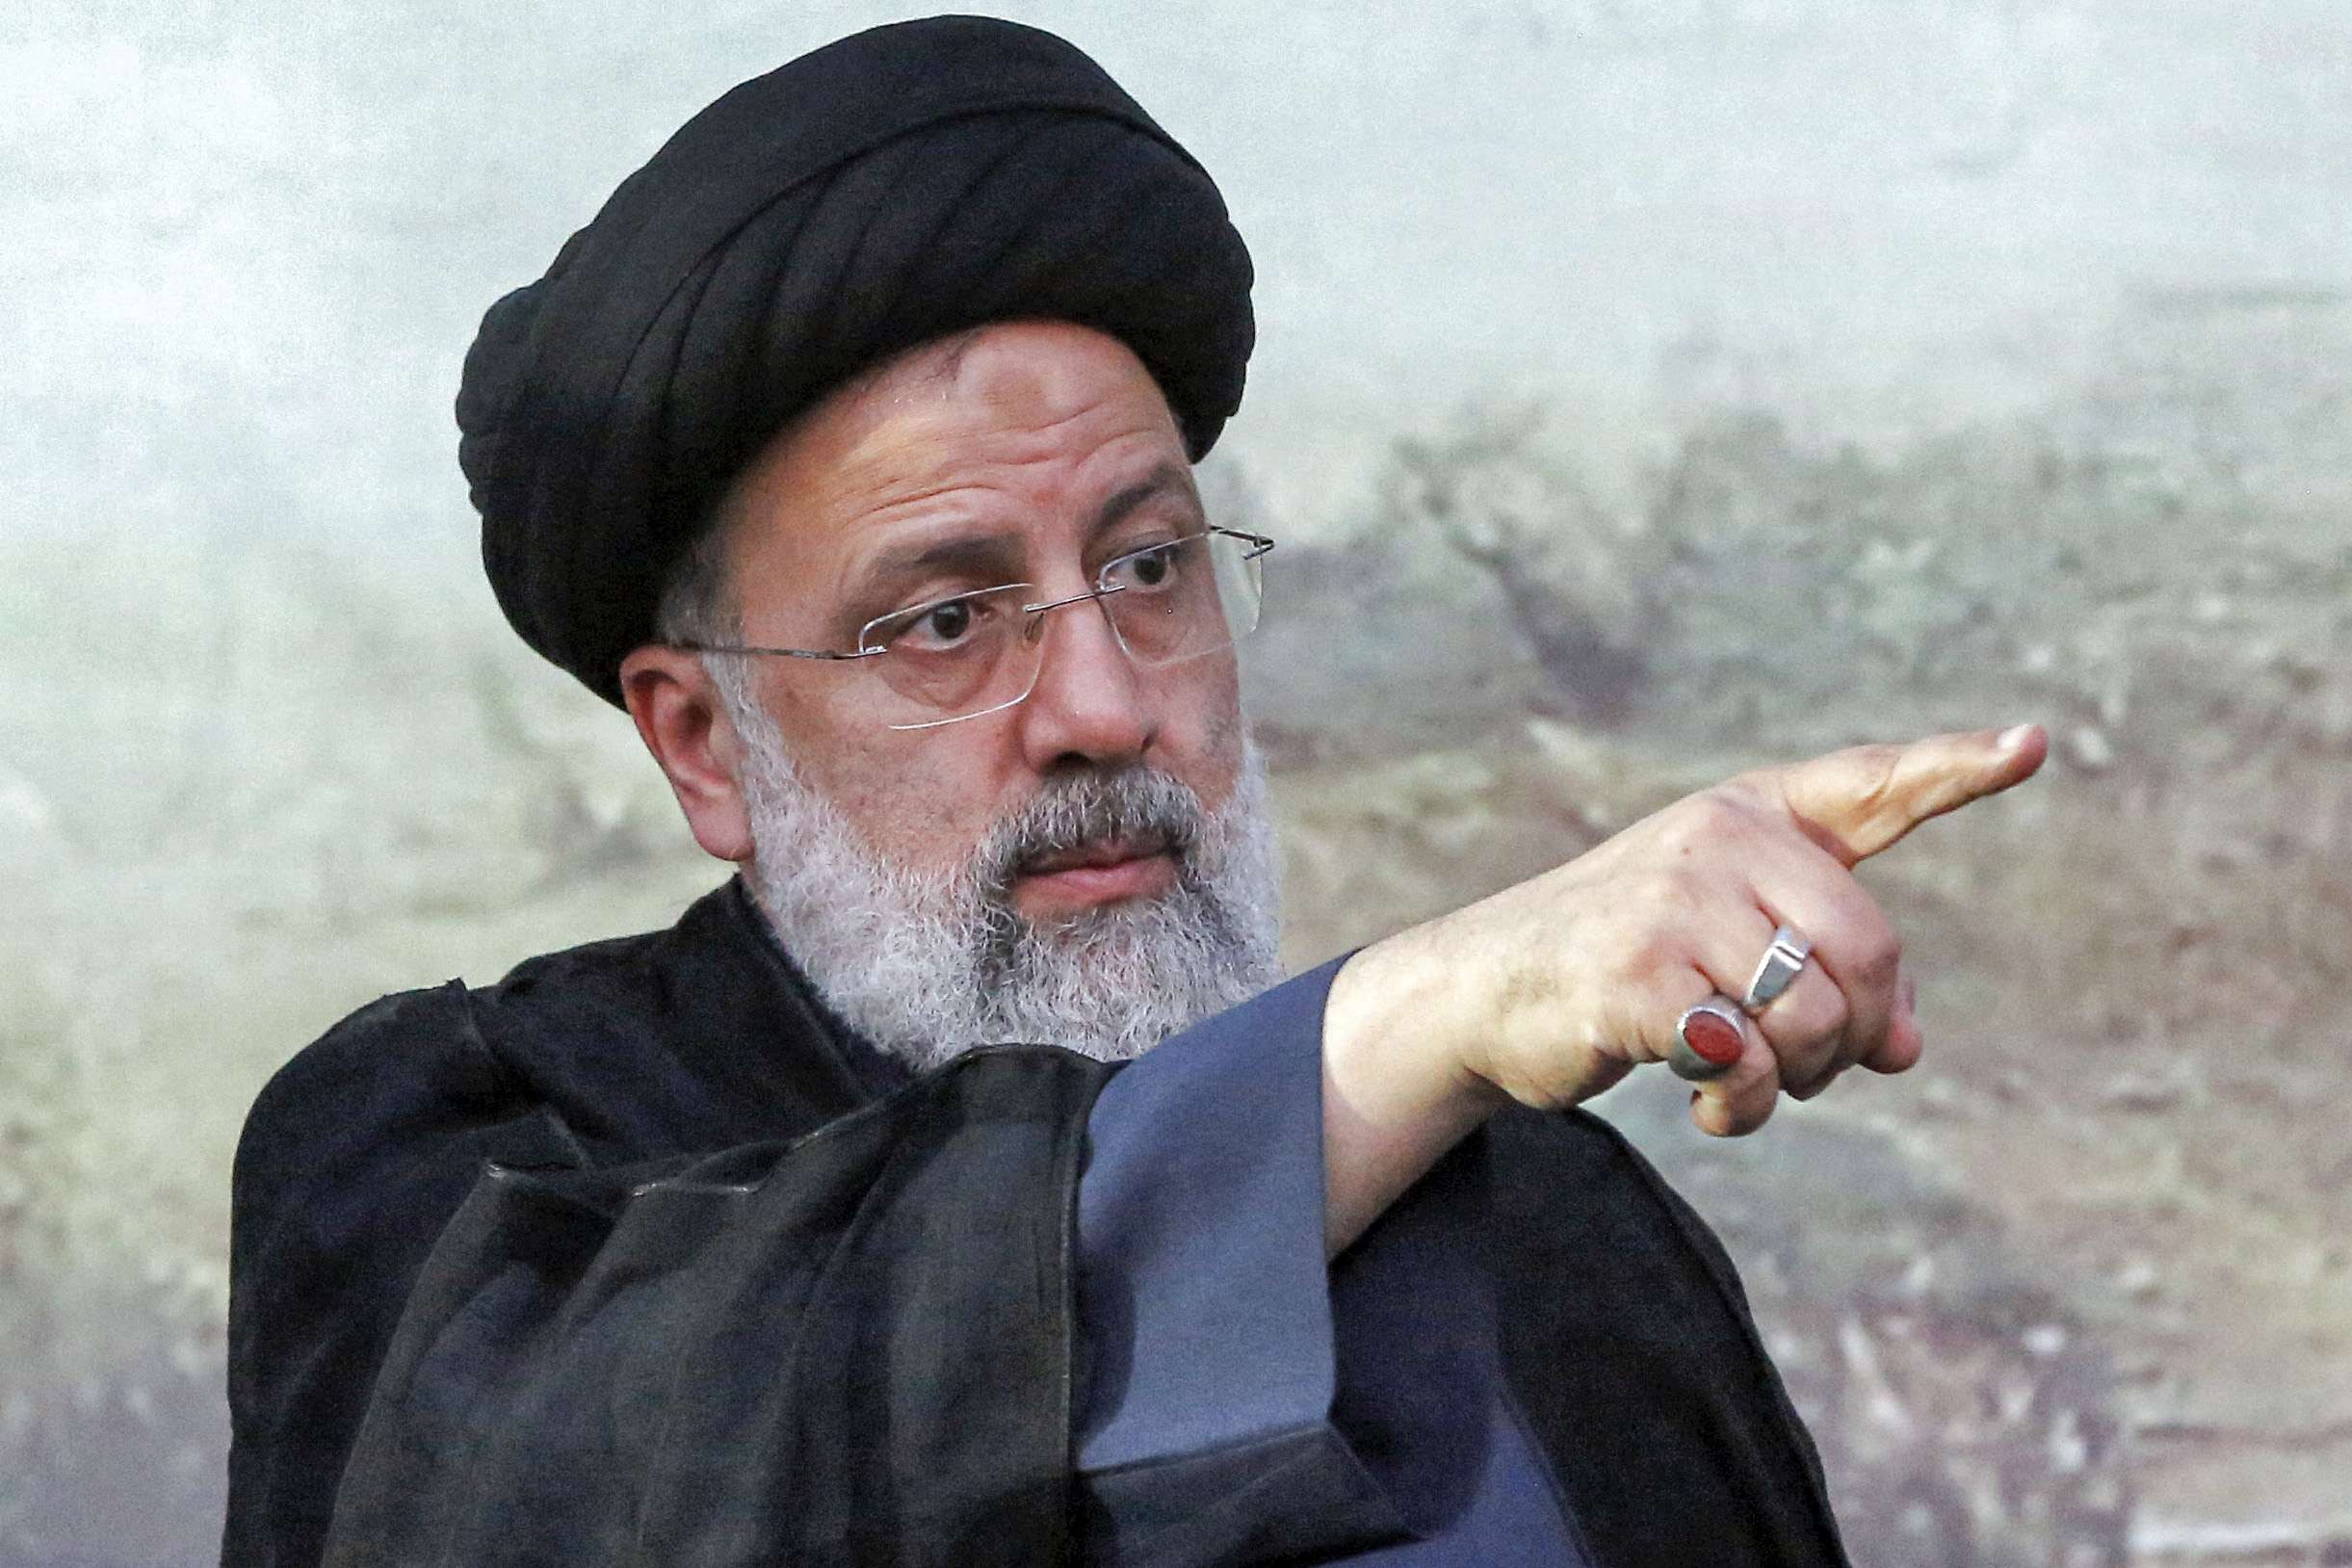 منظمة العفو الدولية تدعو إلى تحقيق بشأن الرئيس الإيراني الجديد في قضايا “جرائم ضد الإنسانية”